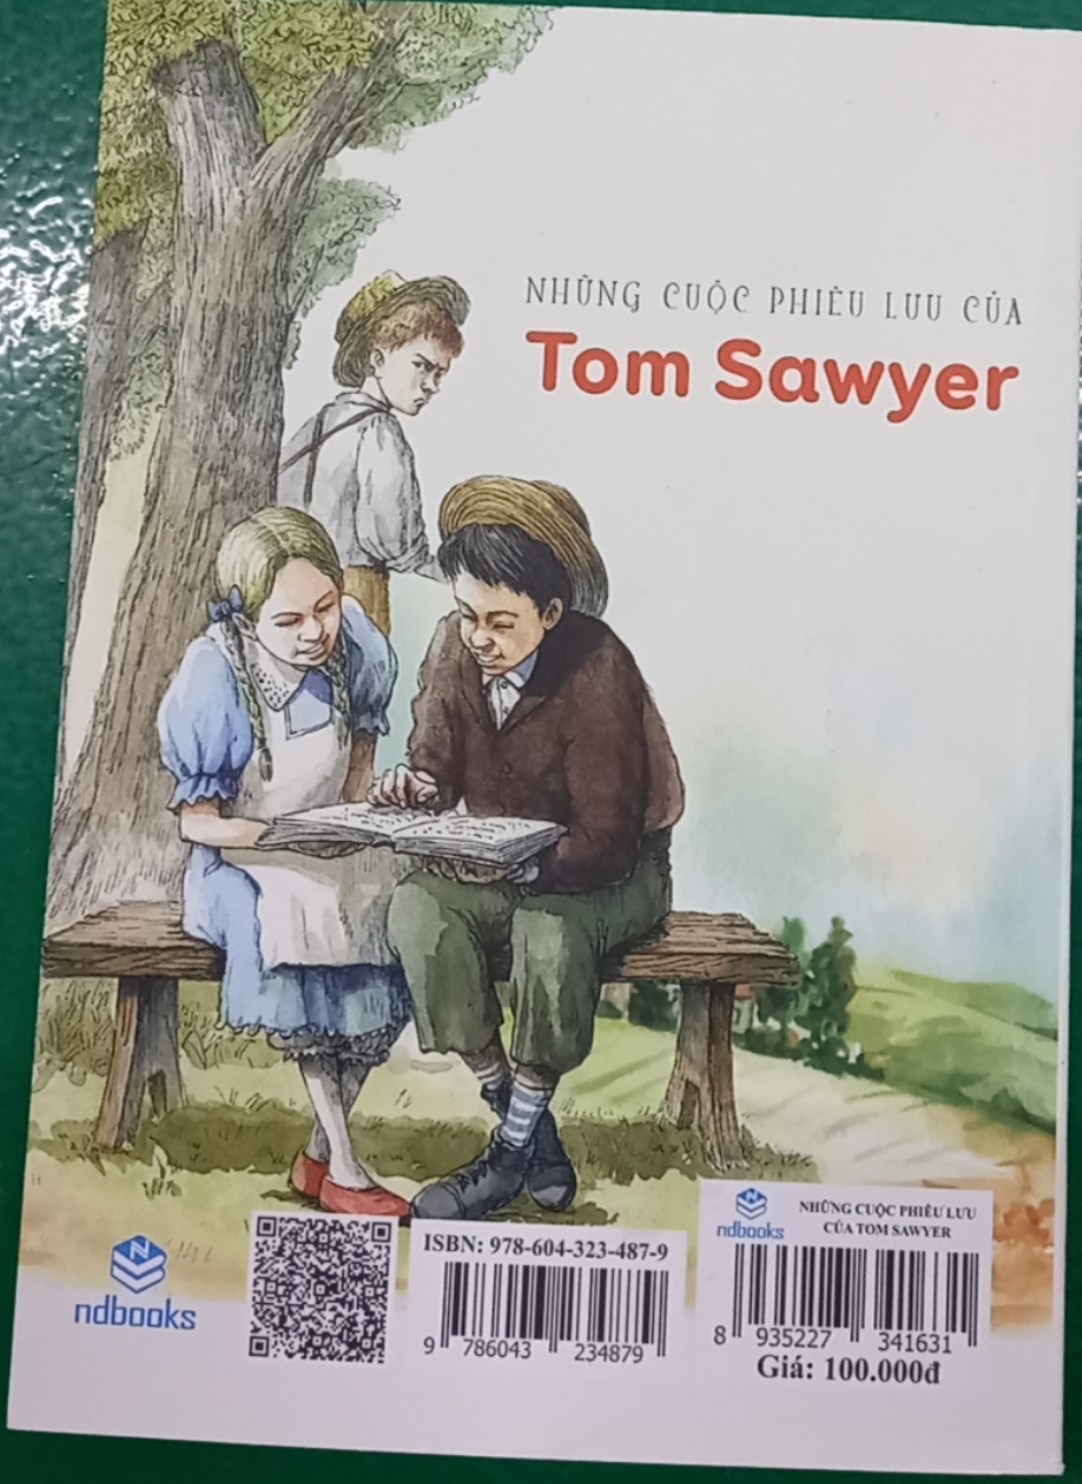 NDB - Những cuộc phiêu lưu của Tom Sawyer